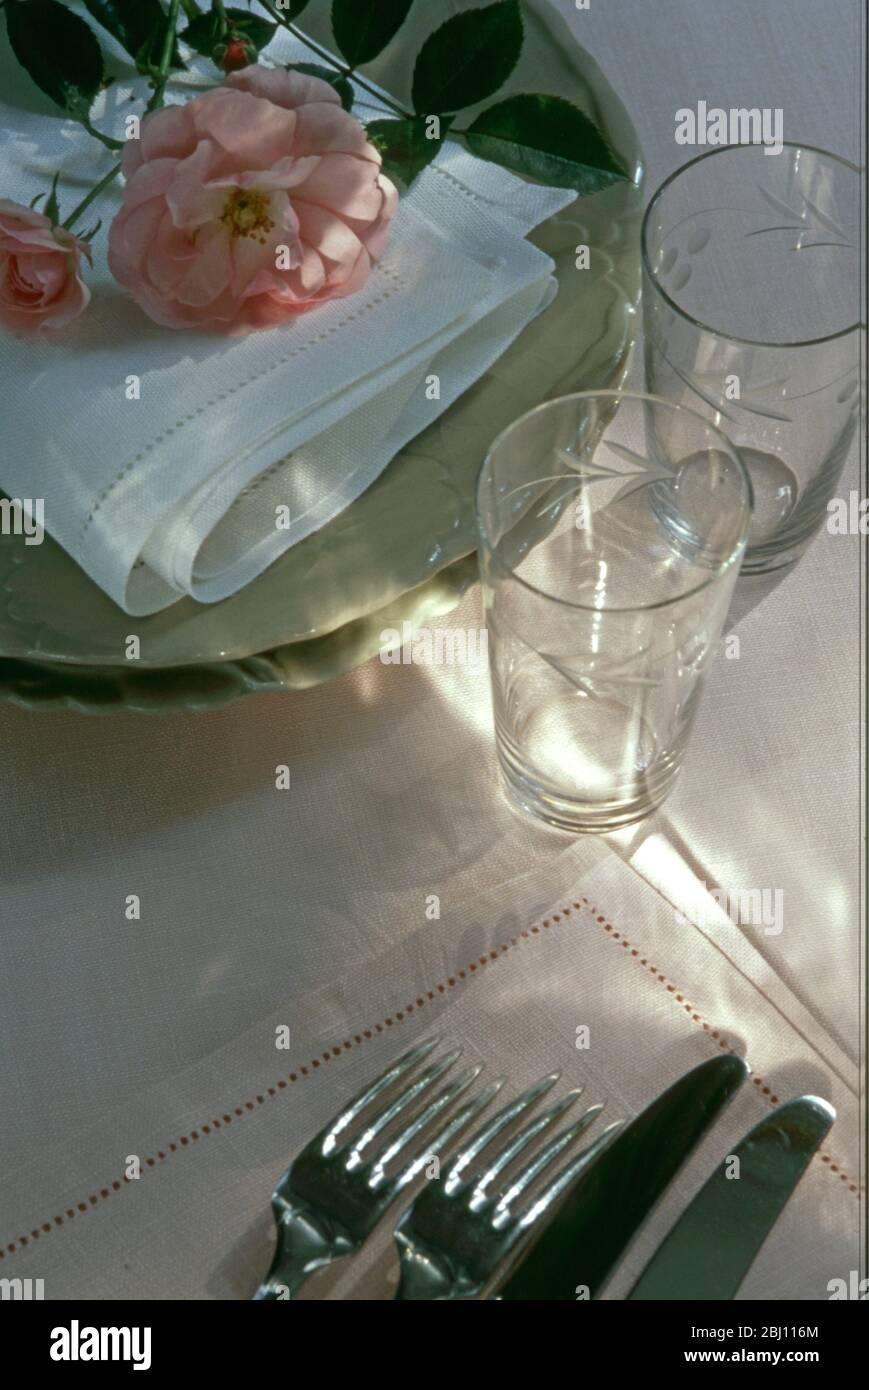 Préparez-vous à poser une table pour un dîner, en choisissant des verres couverts assiettes et serviettes avec une rose fraîchement cueilliée - Banque D'Images